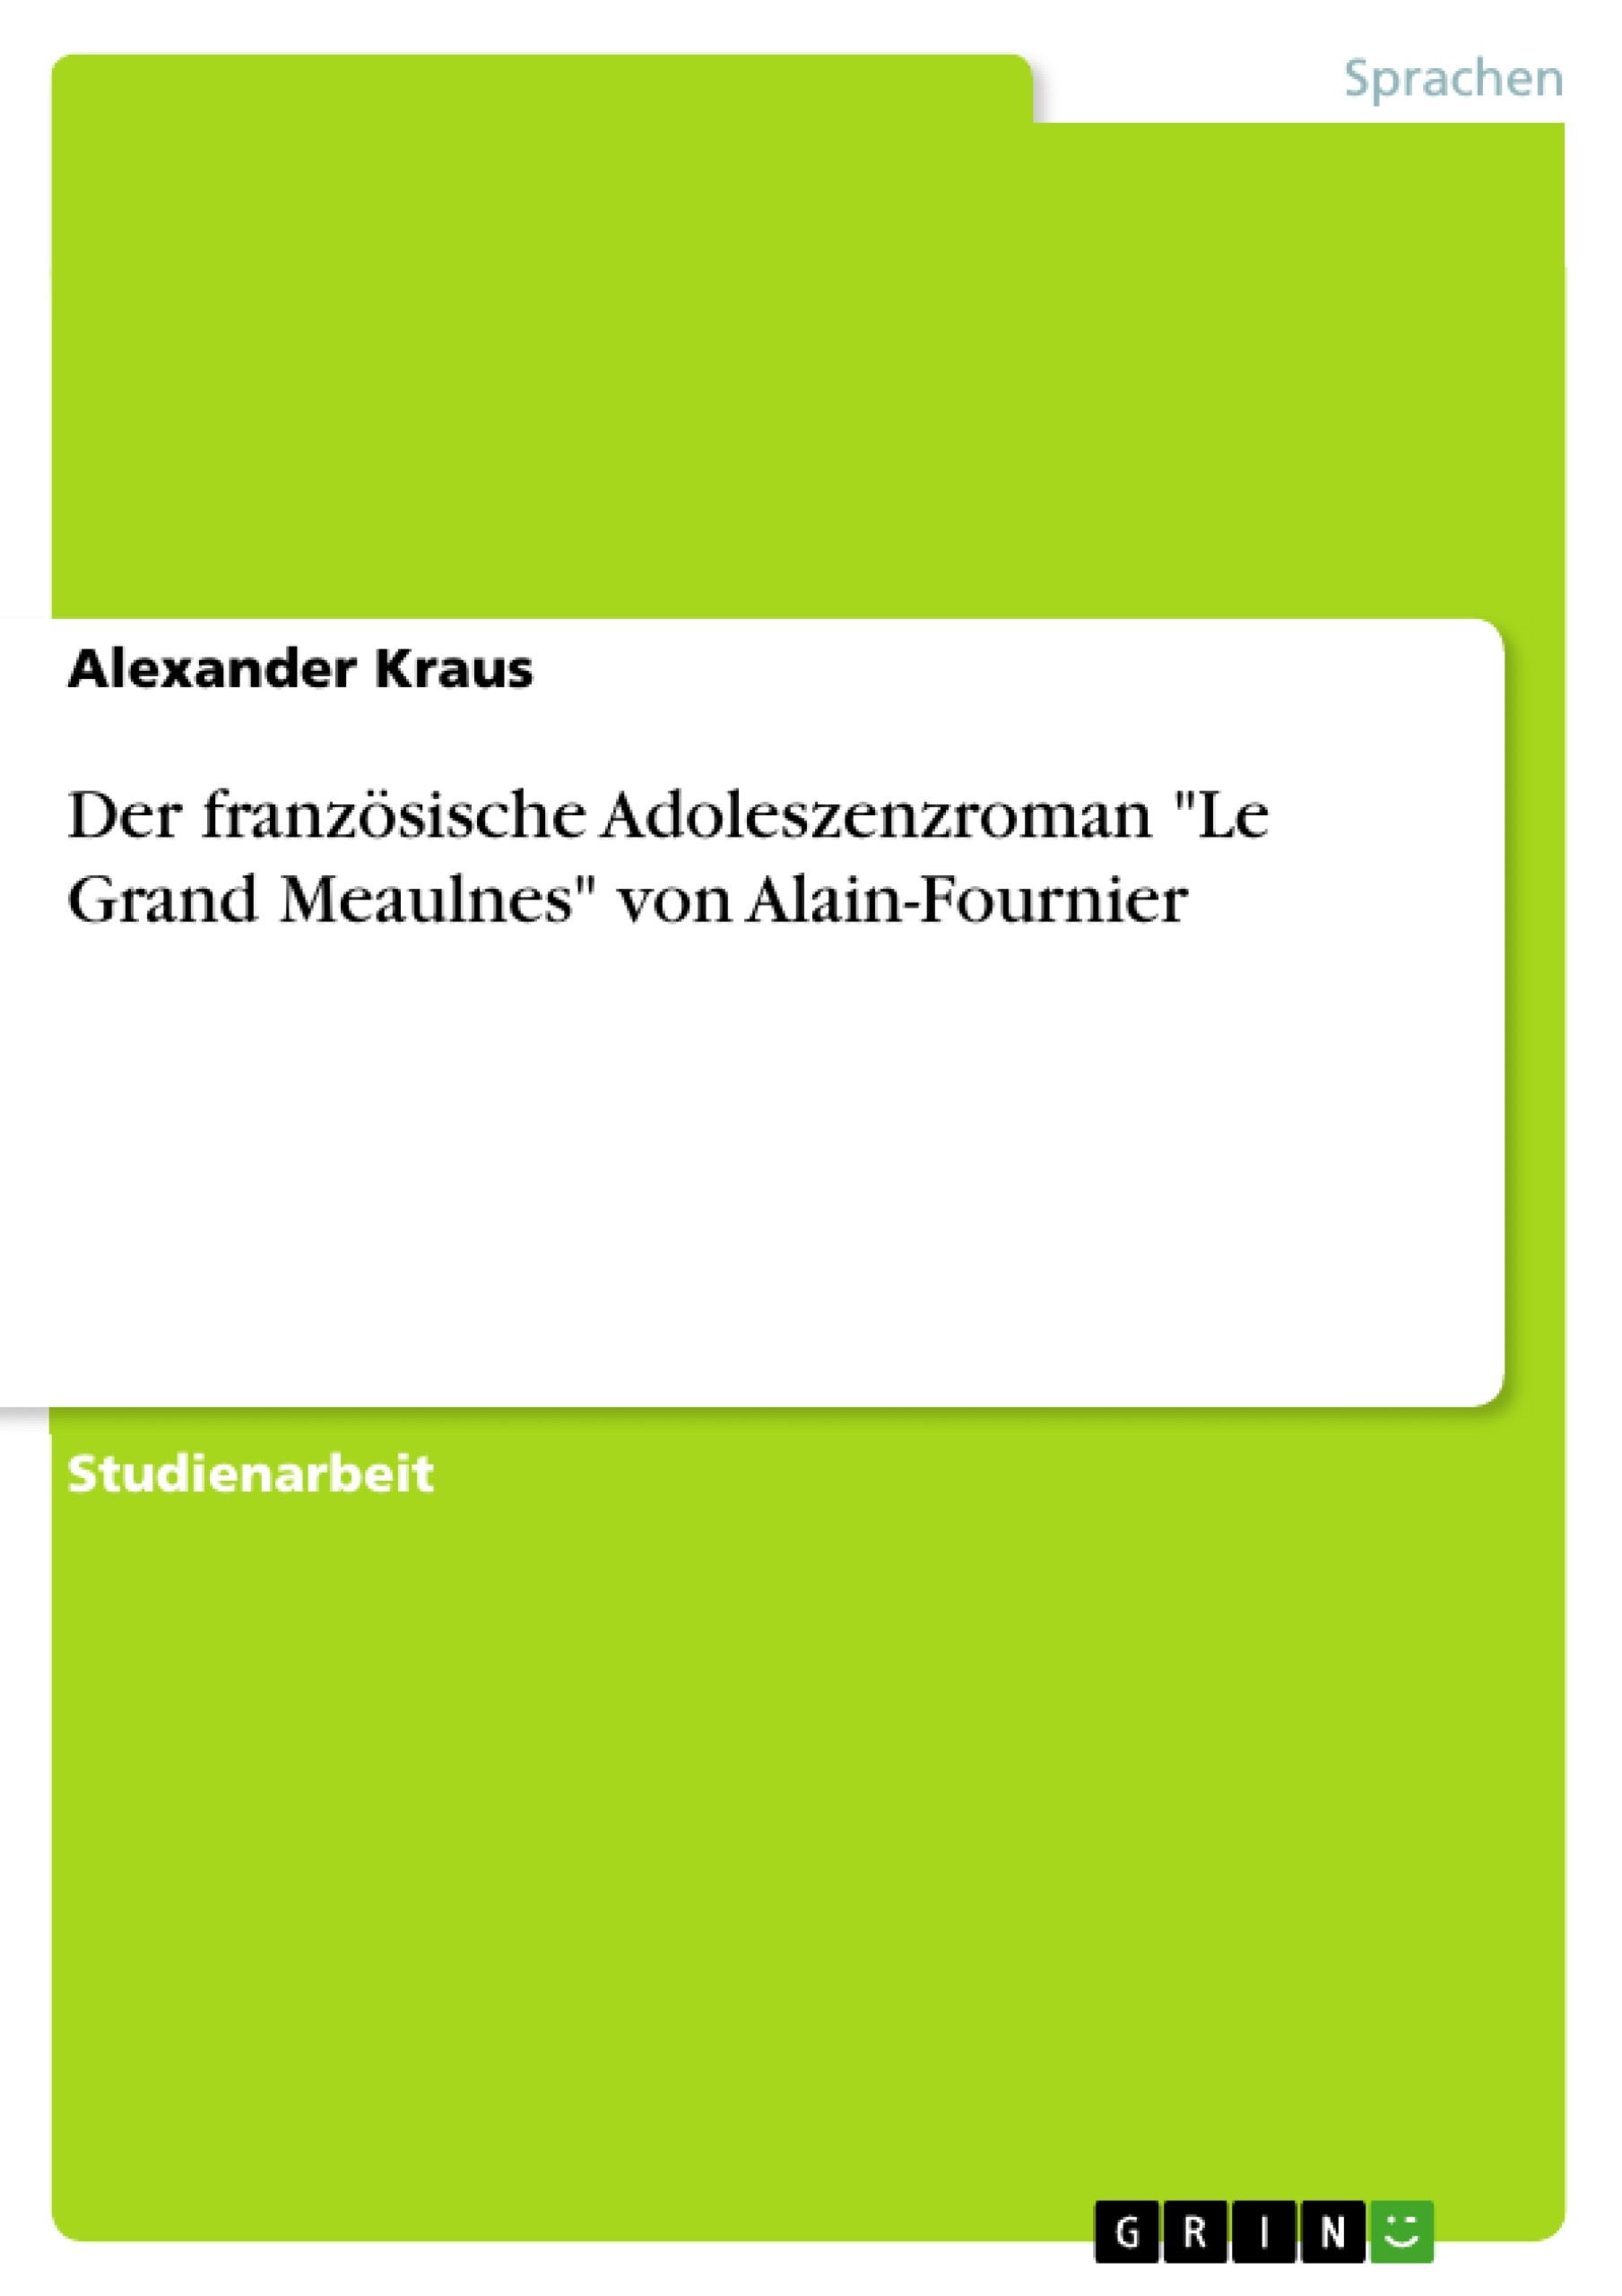 Der französische Adoleszenzroman 'Le Grand Meaulnes' von Alain-Fournier